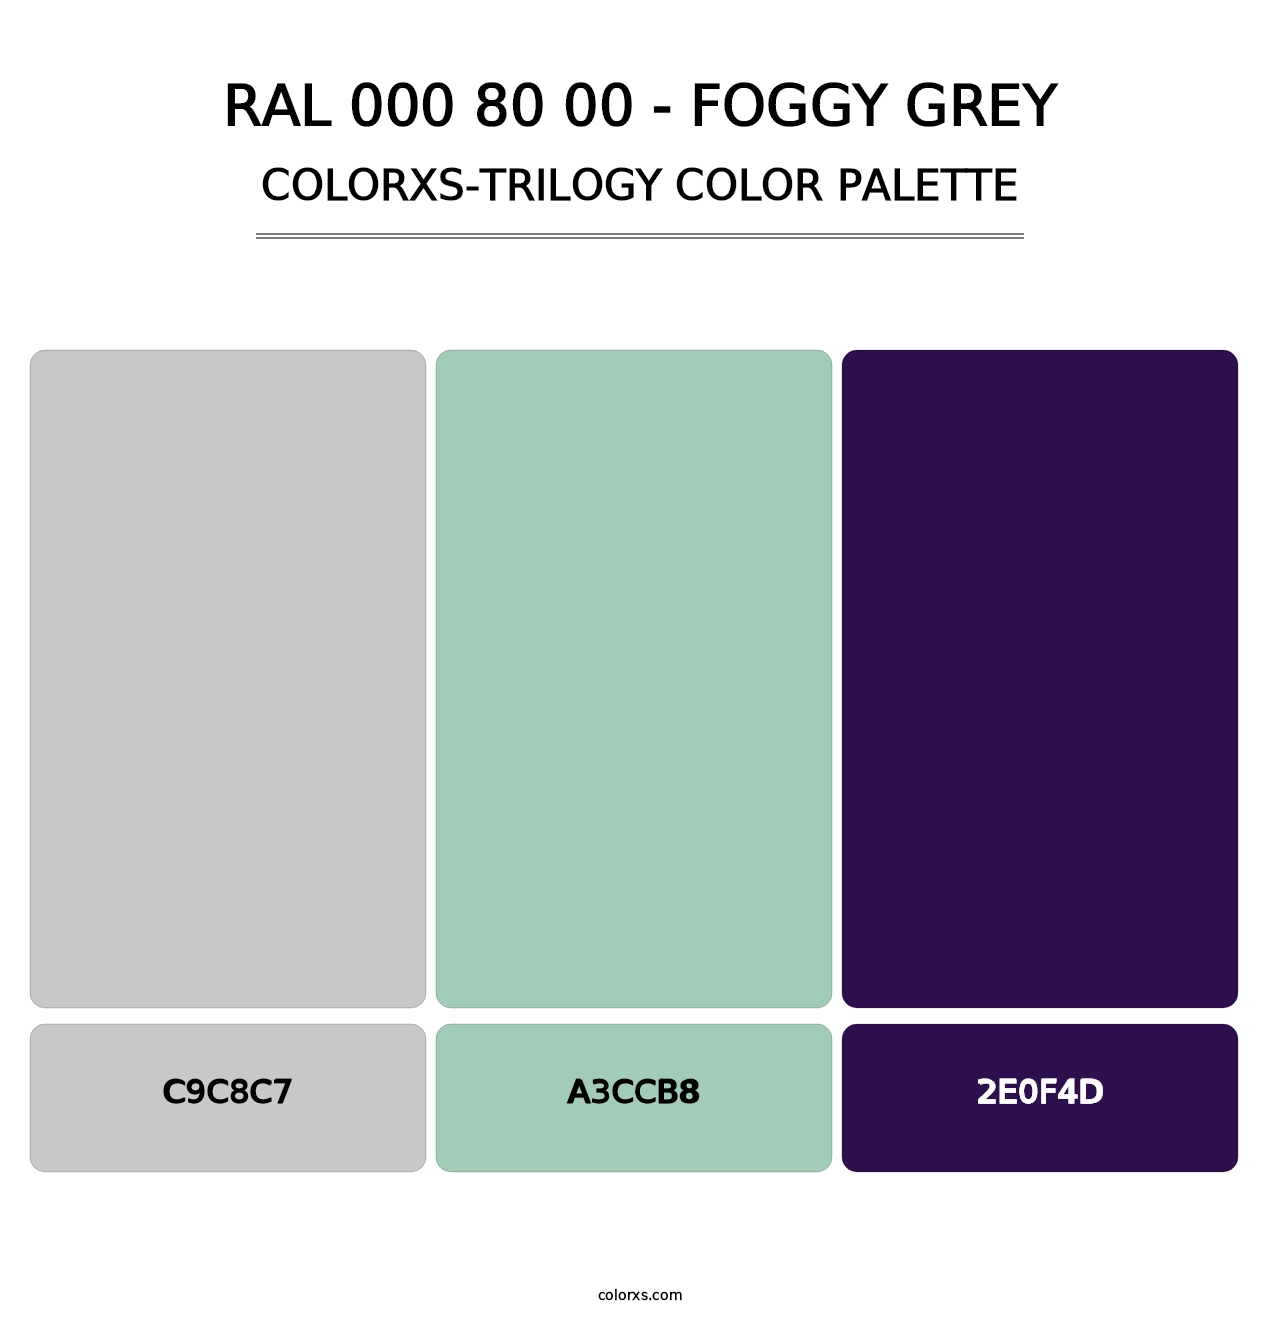 RAL 000 80 00 - Foggy Grey - Colorxs Trilogy Palette